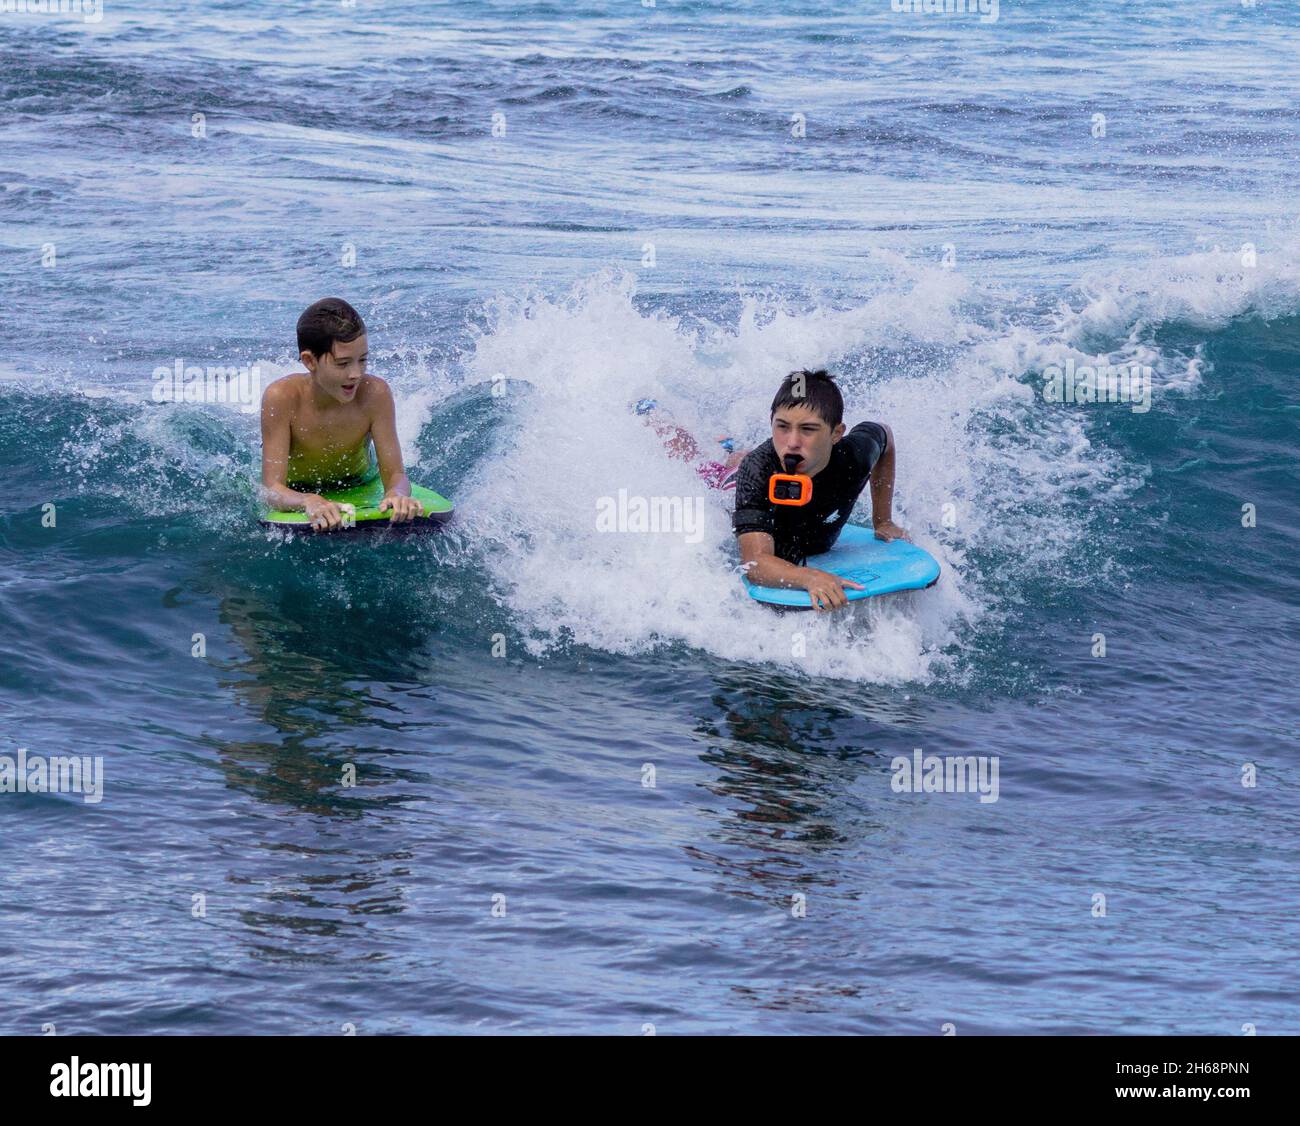 Honolulu, Hawaii - 6 novembre 2021 - les jeunes garçons jouent sur leurs planches de surf. Banque D'Images